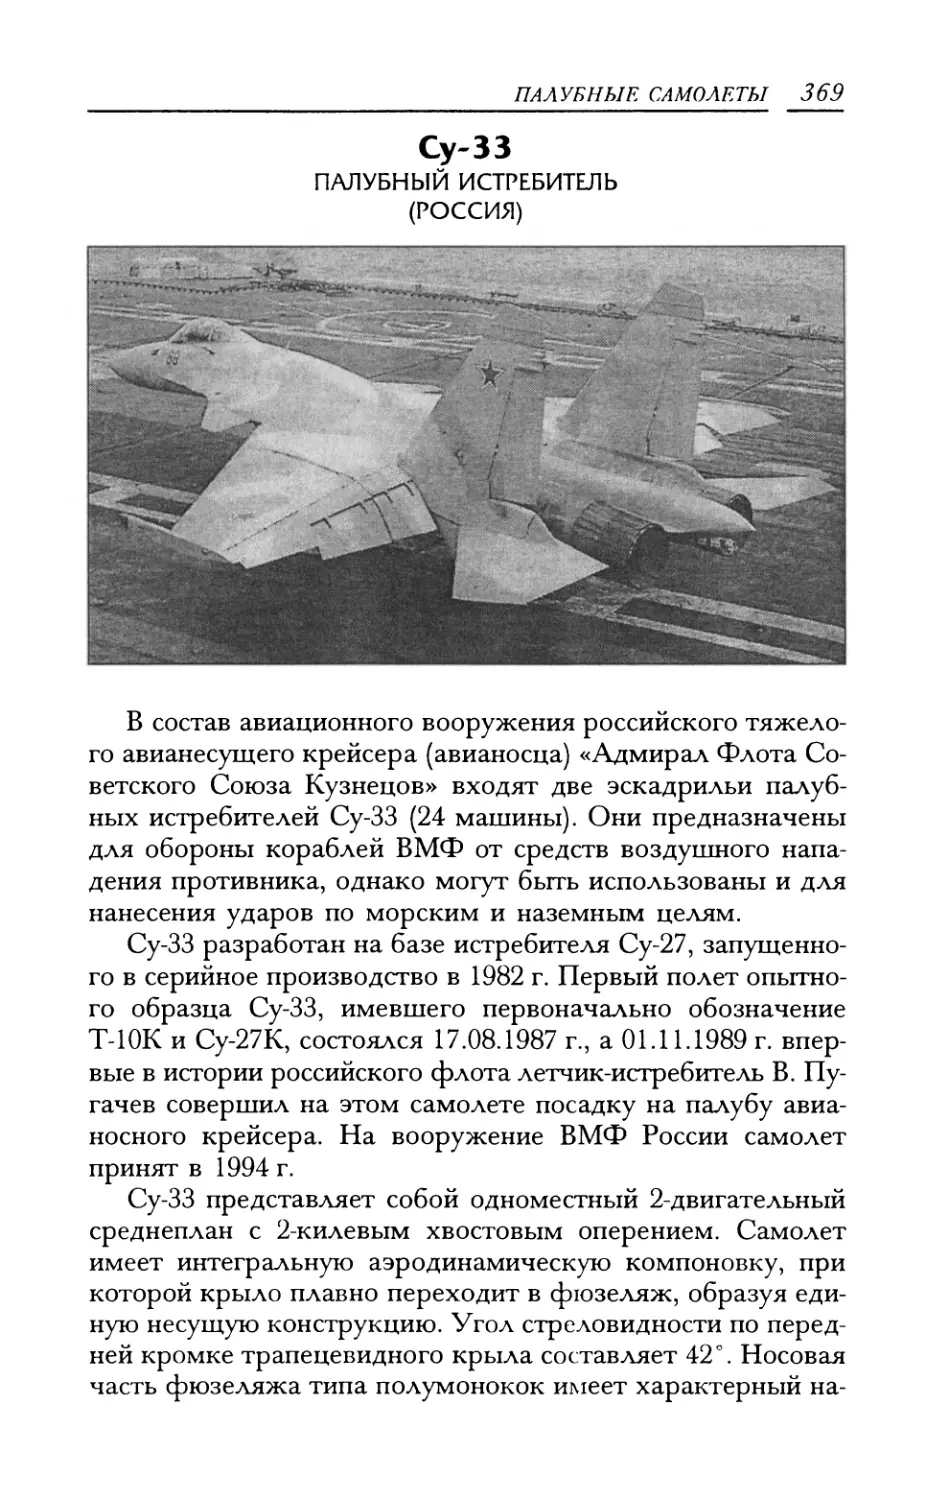 Су-33